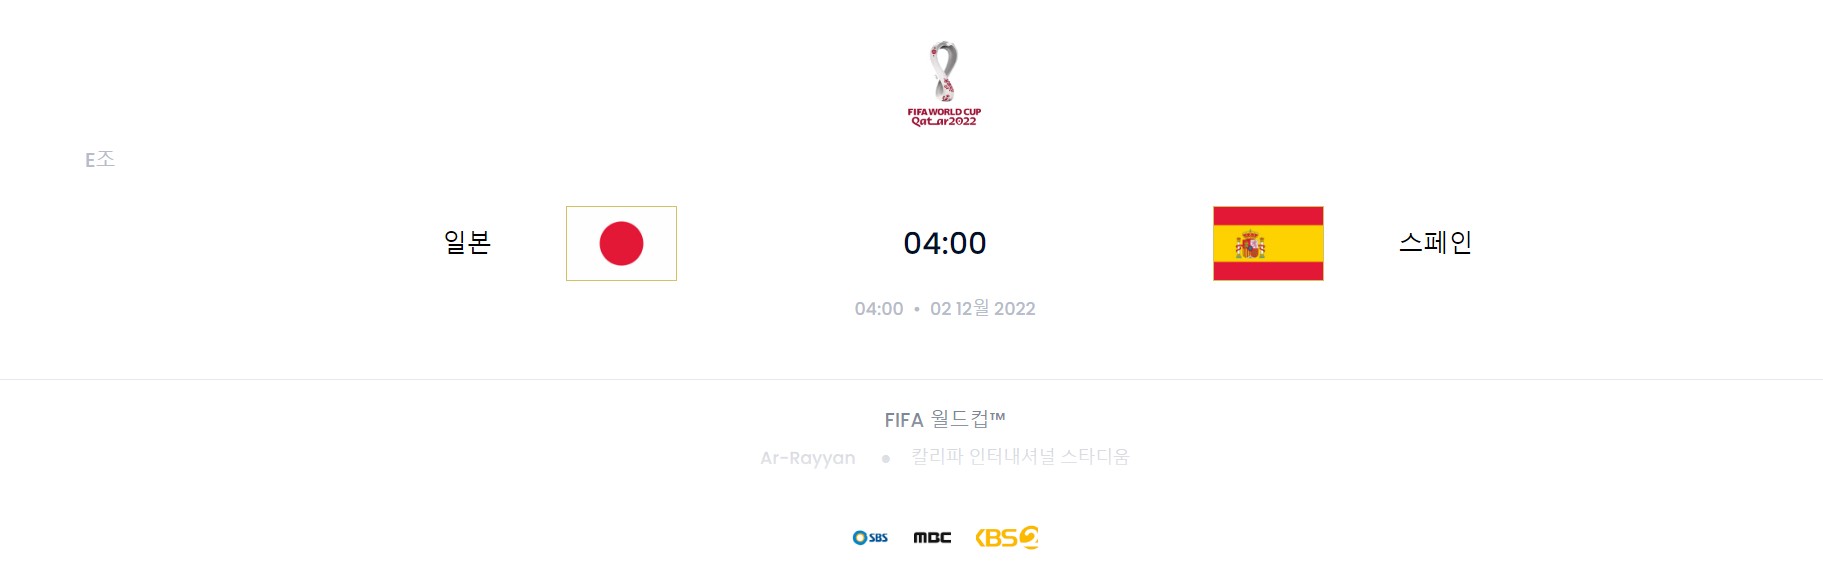 카타르 월드컵 F조 5경기 (일본 VS 스페인)